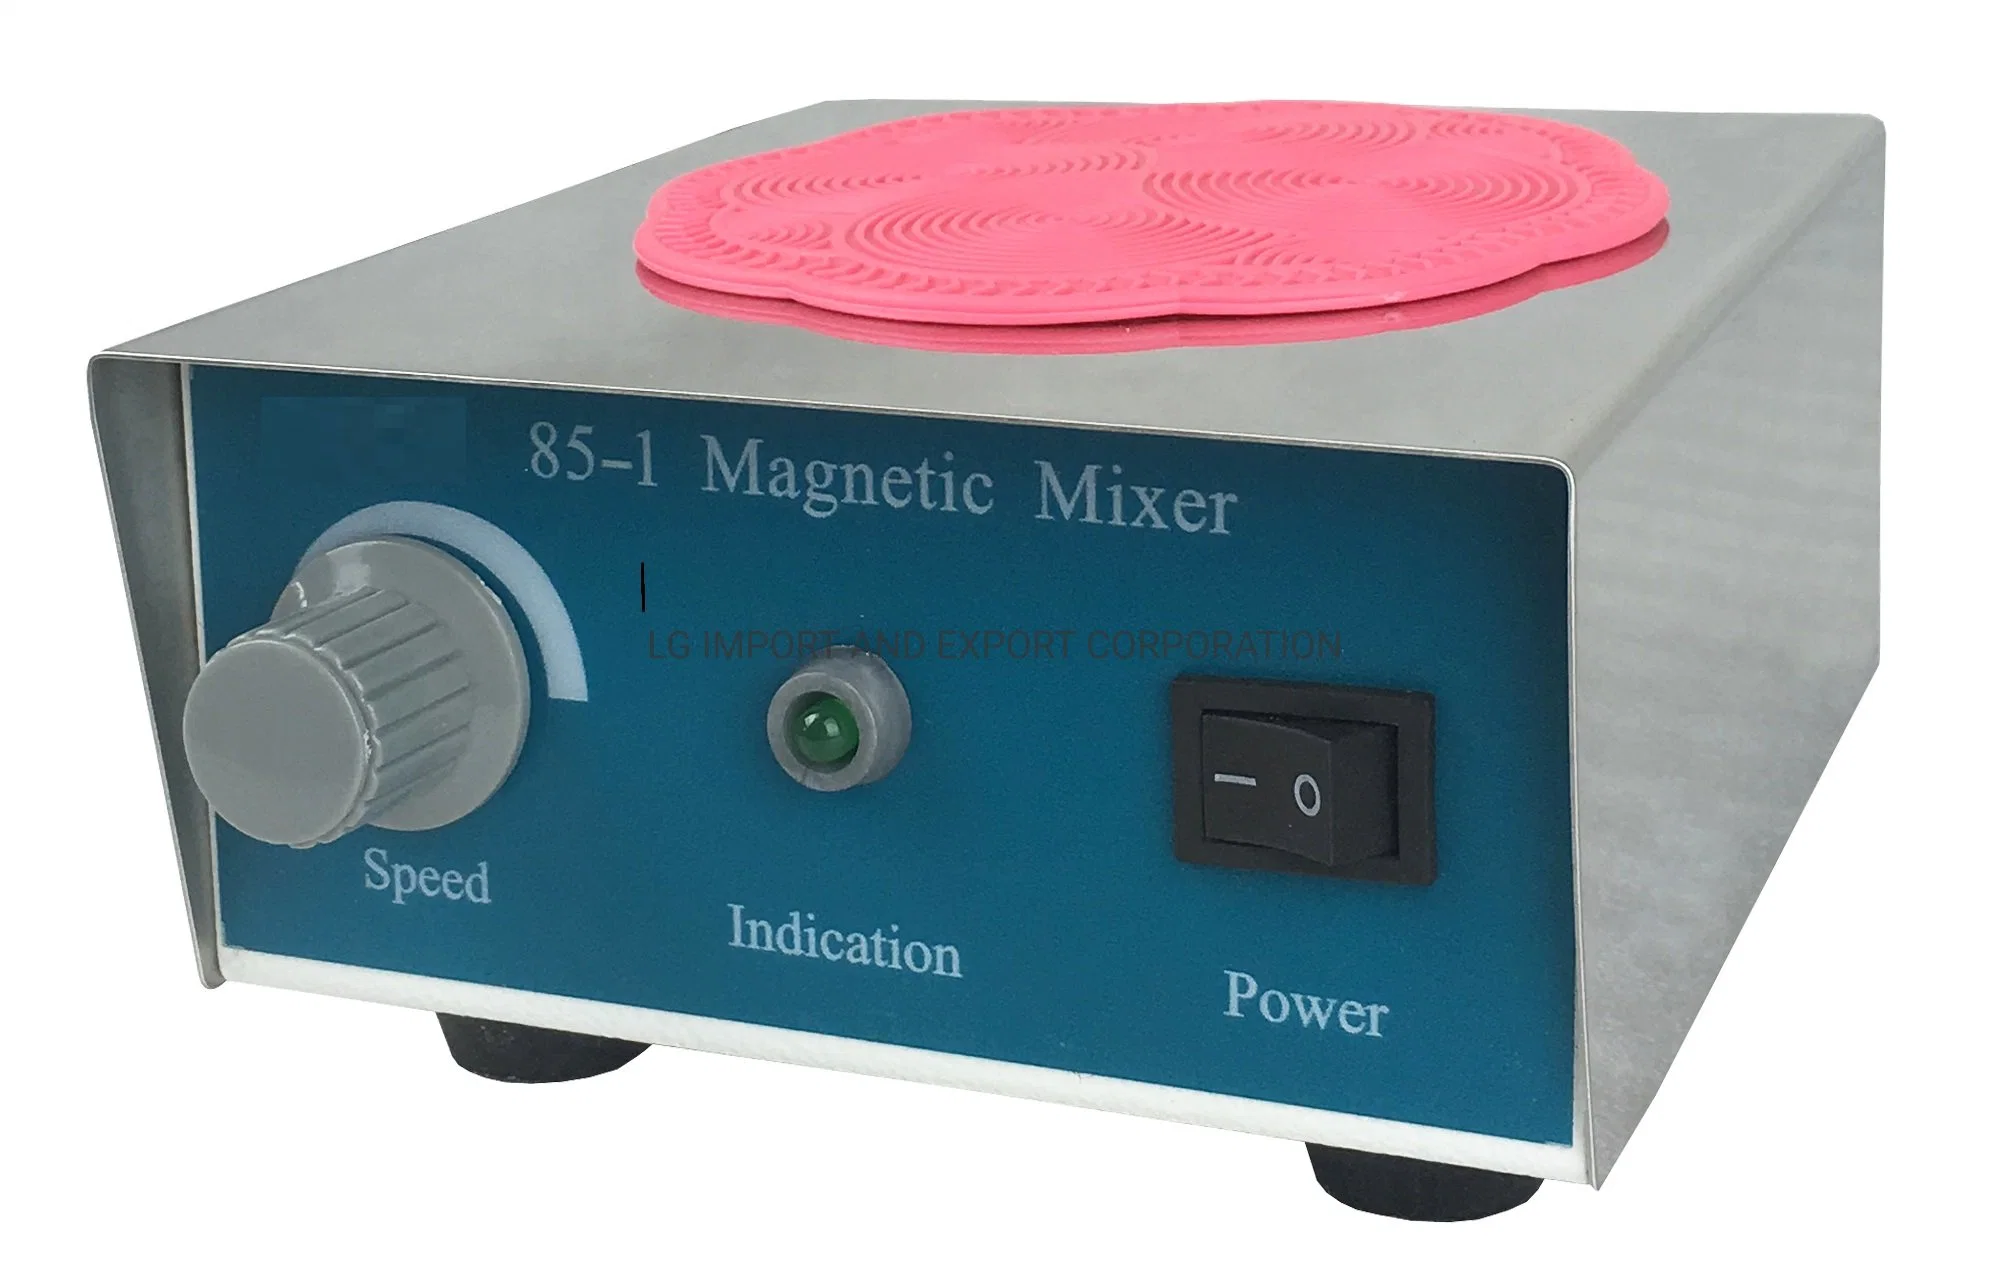 Magnetic Stirrer LG-85-1 for Medical Use